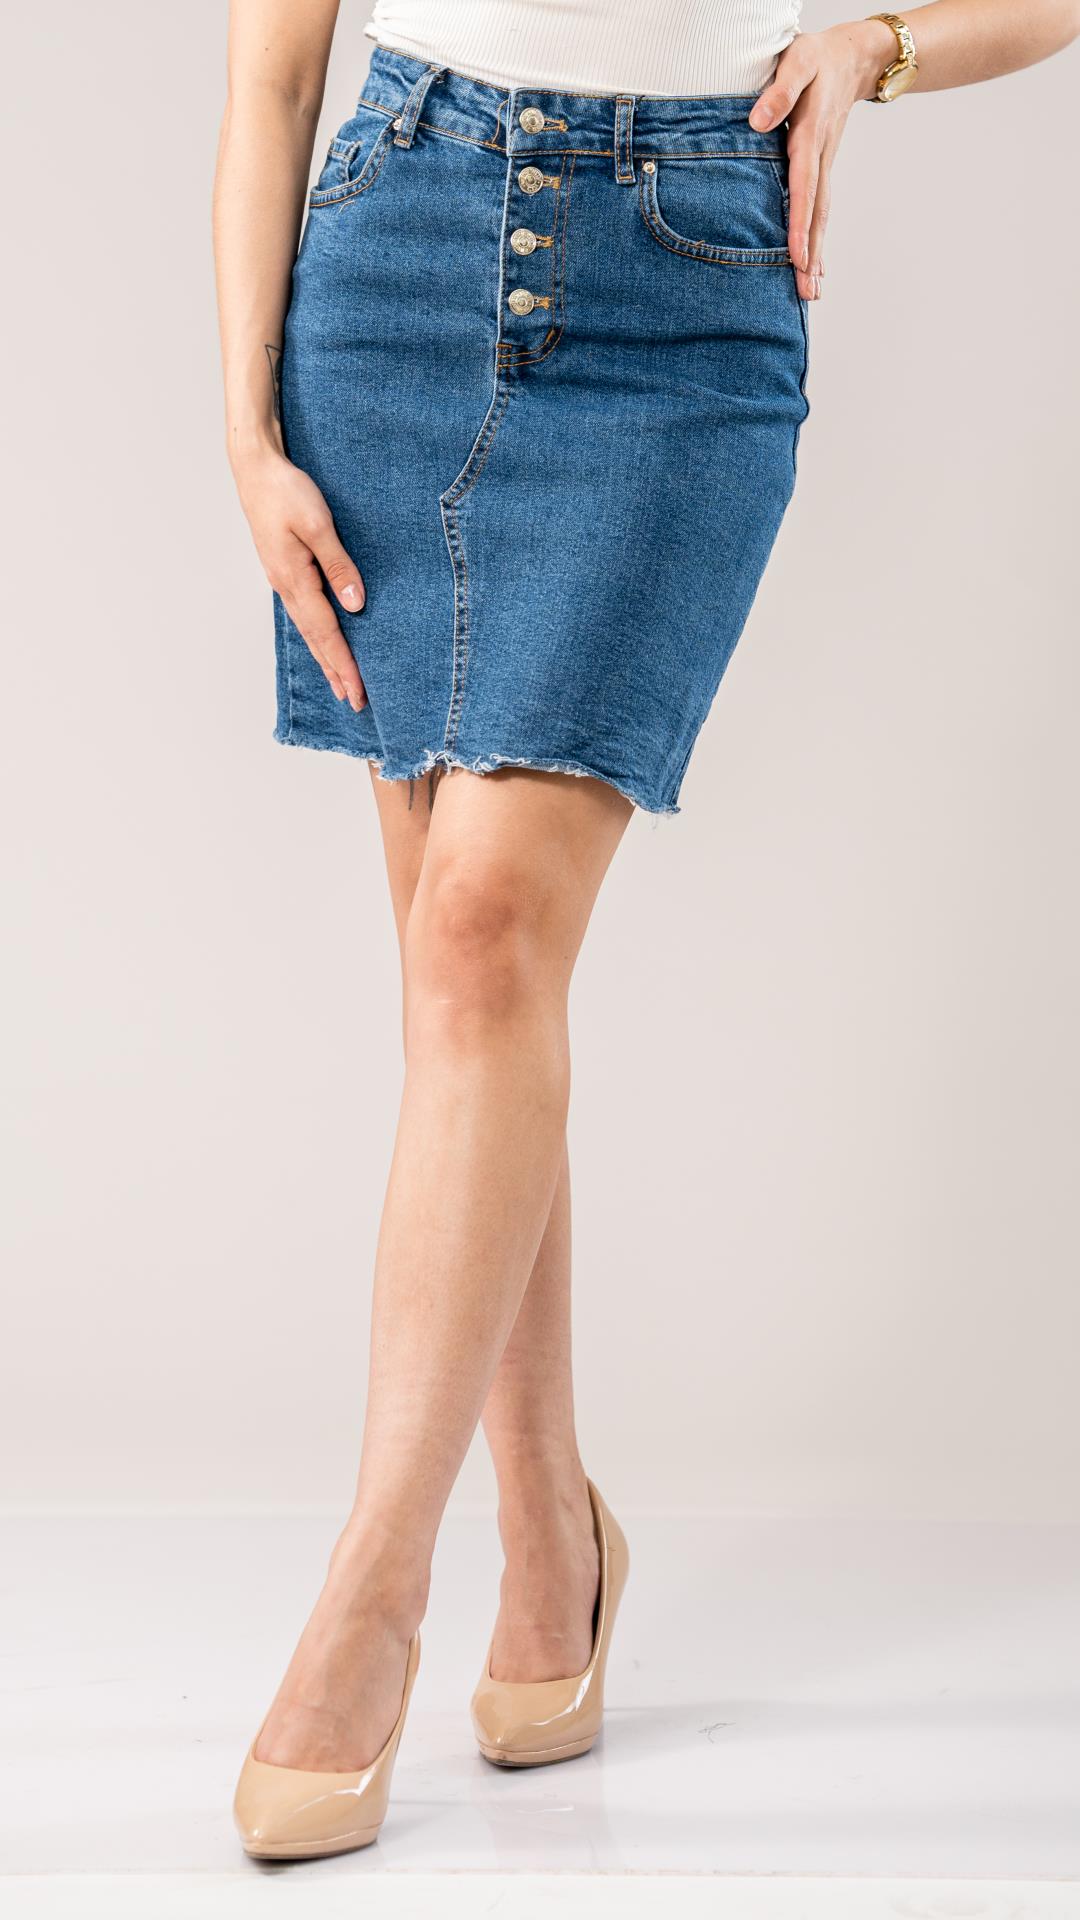 Short jeans skirt 